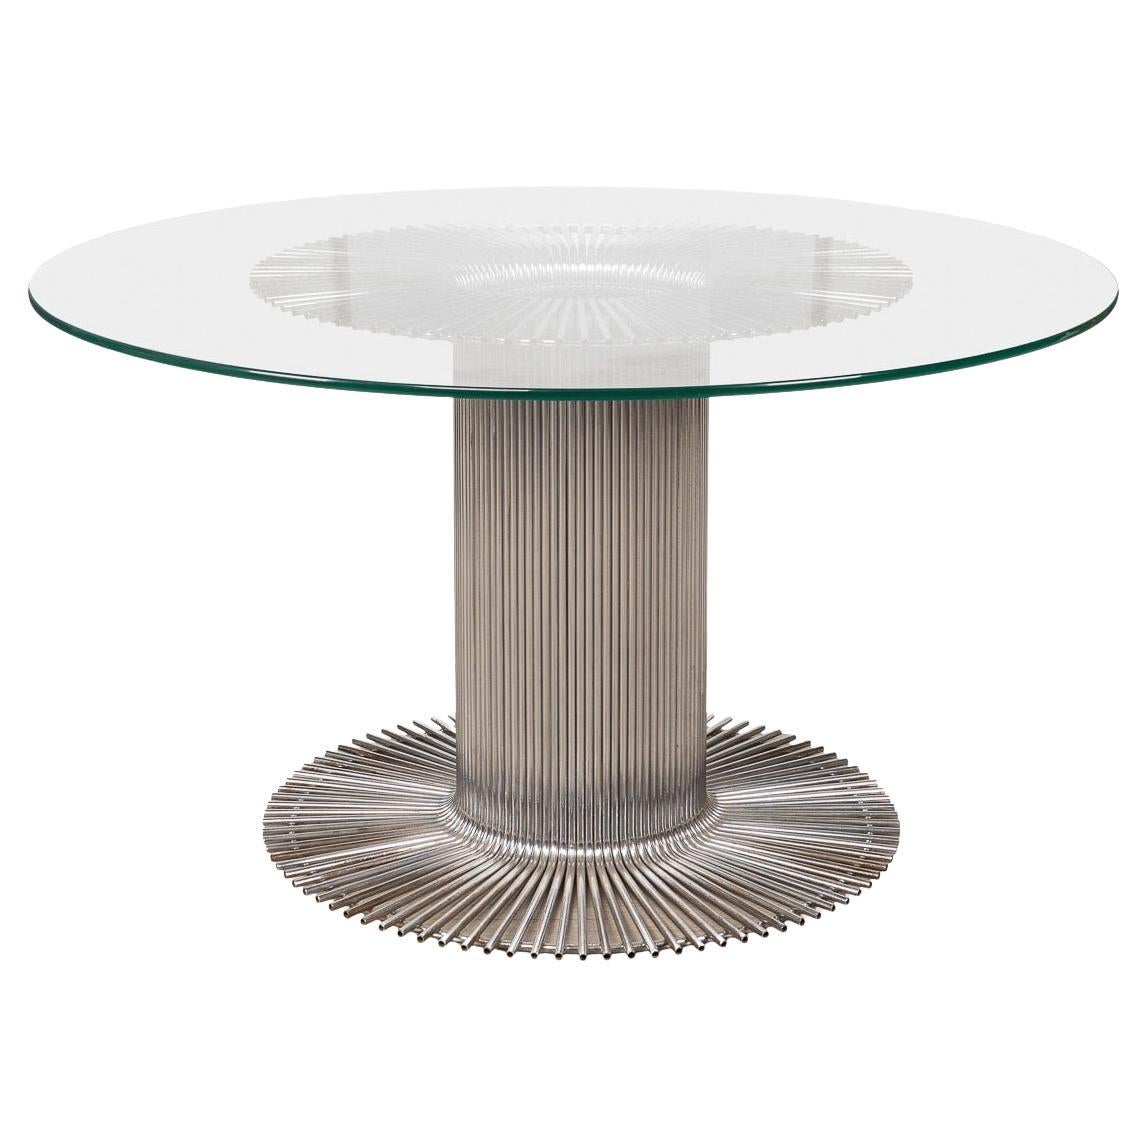 Table de salle à manger du 20ème siècle Gastone Rinaldi pour RIMA ajourée en métal et verre C.1970